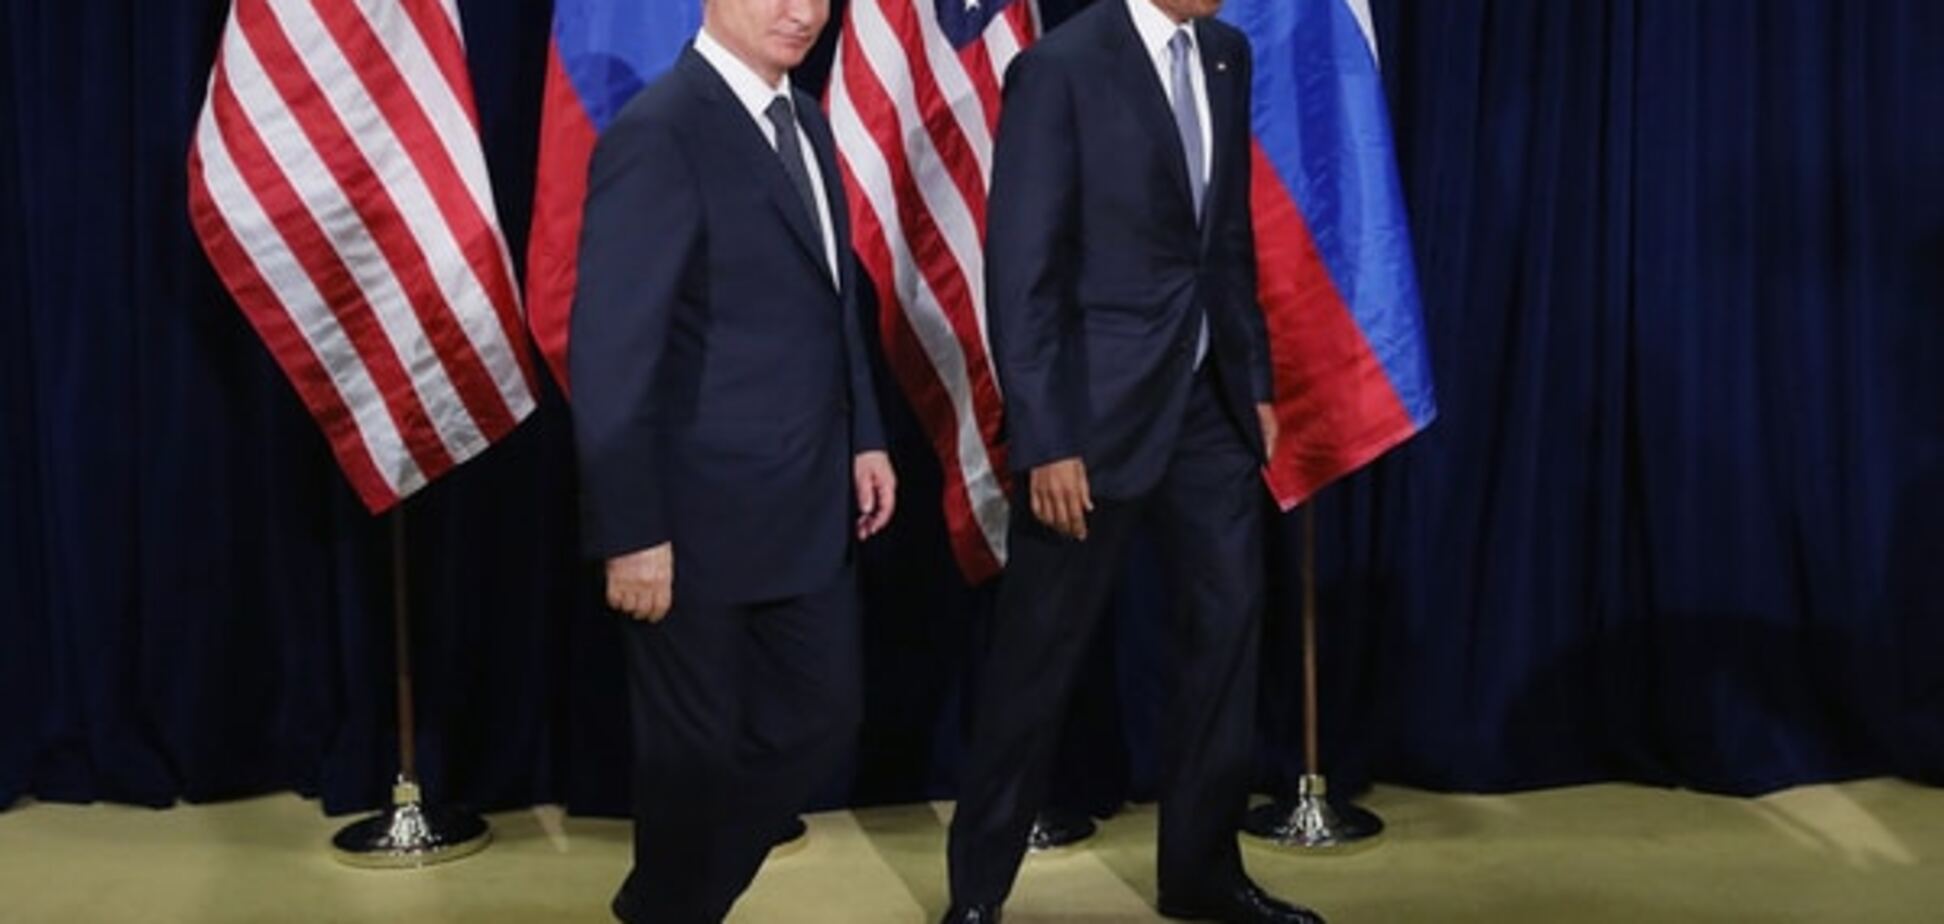 Рабинович: Путин полностью списан Америкой, как опасный изгой и лжец